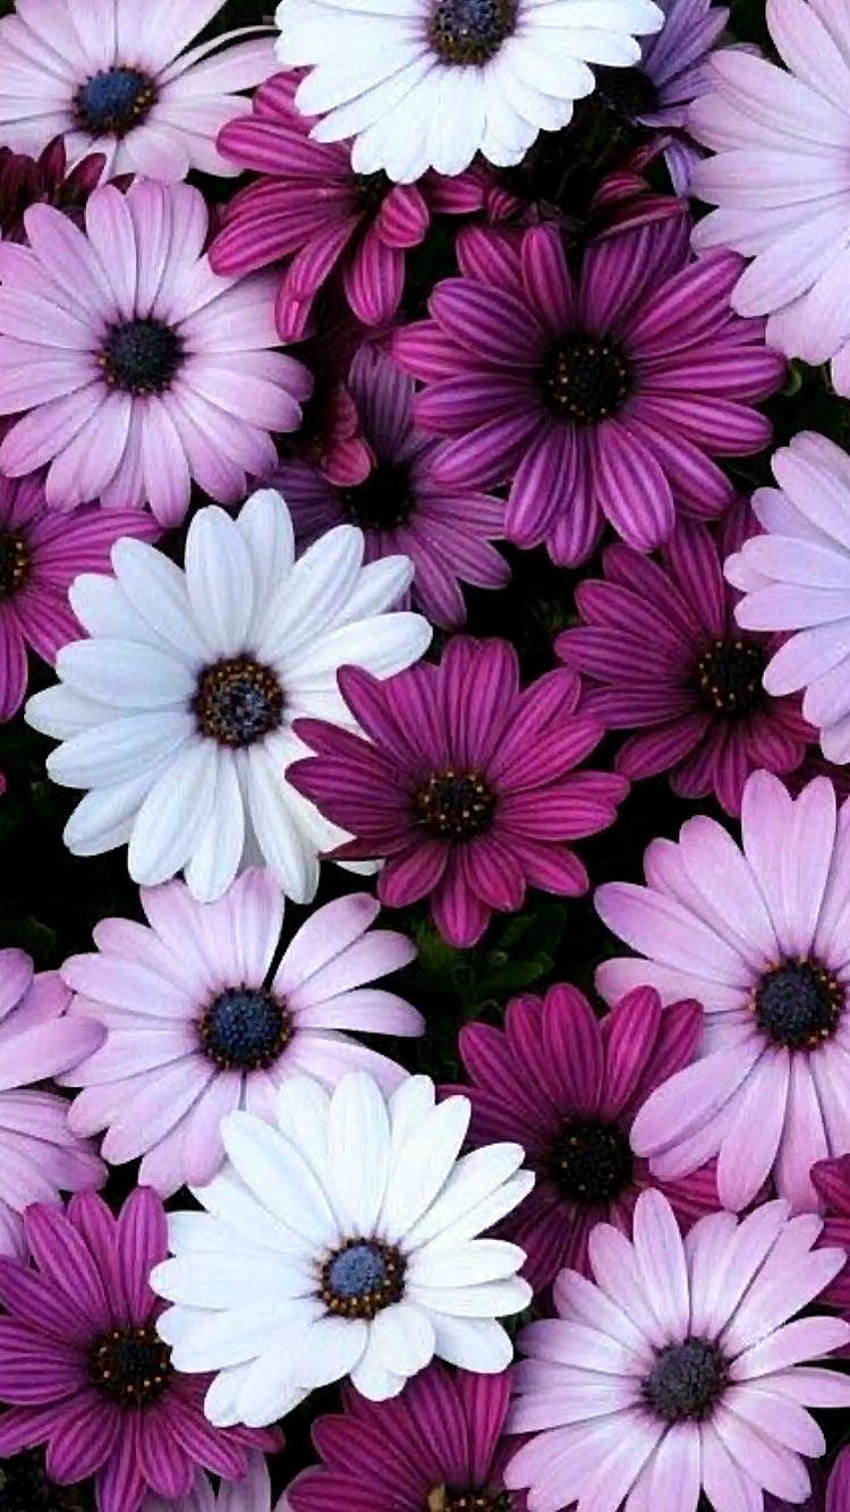 Purple flower: Hoa màu tím luôn được yêu thích bởi sự thơ mộng và dịu dàng của nó. Nếu bạn còn không biết tại sao lại thích hoa màu tím thì kiểm tra ngay bức ảnh liên quan và tìm hiểu sự đẹp đẽ của nó. Bạn sẽ bị cuốn hút bởi nét đẹp tinh tế của hoa màu tím.